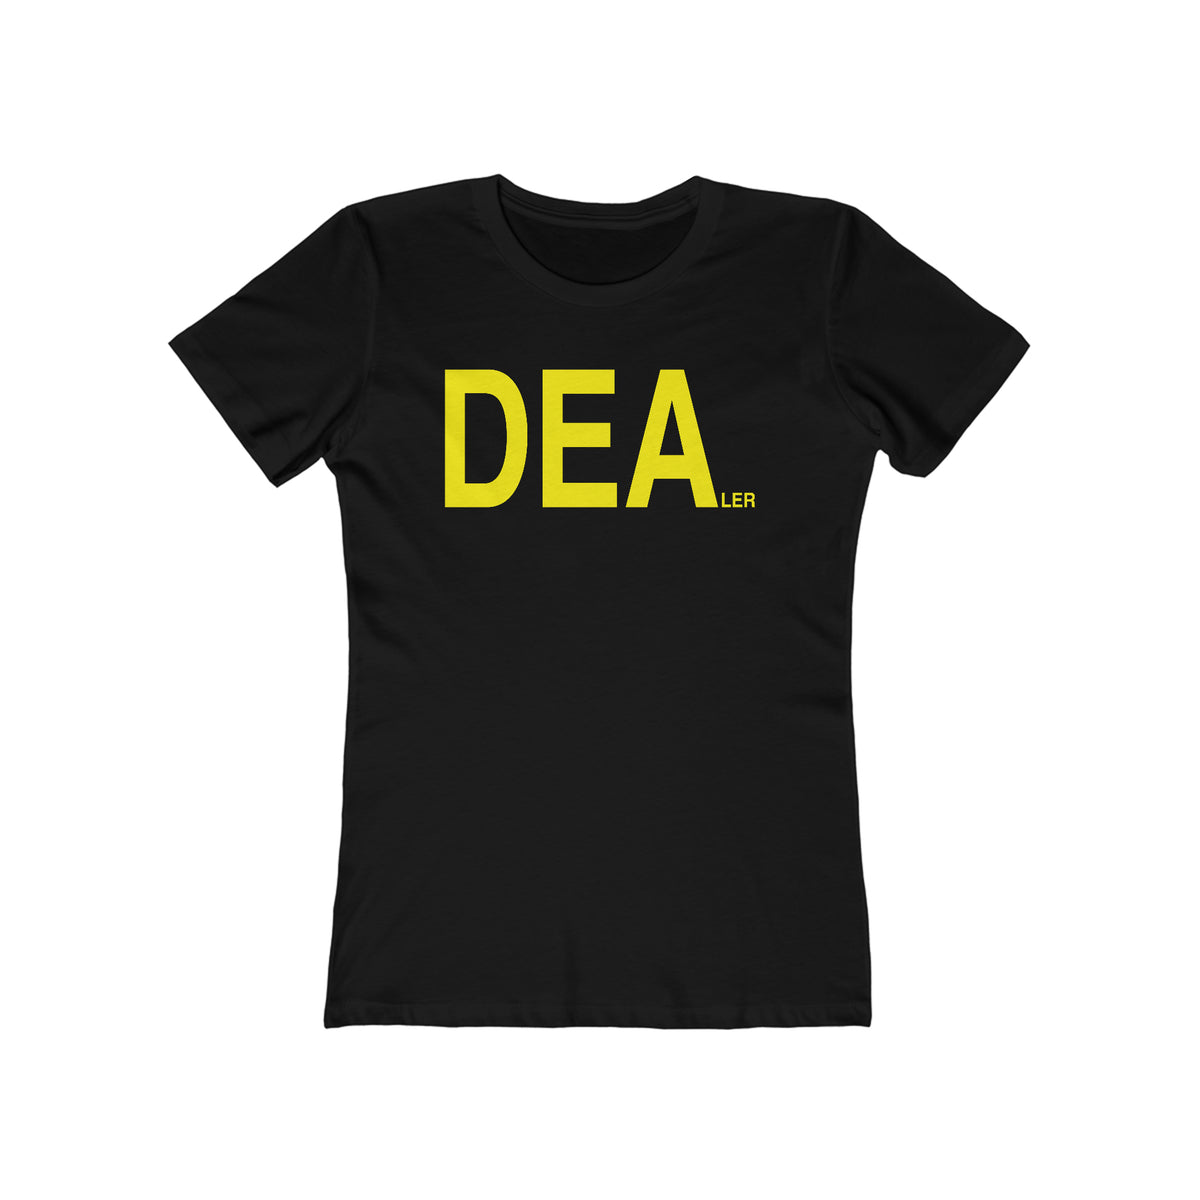 Dealer - Women’s T-Shirt